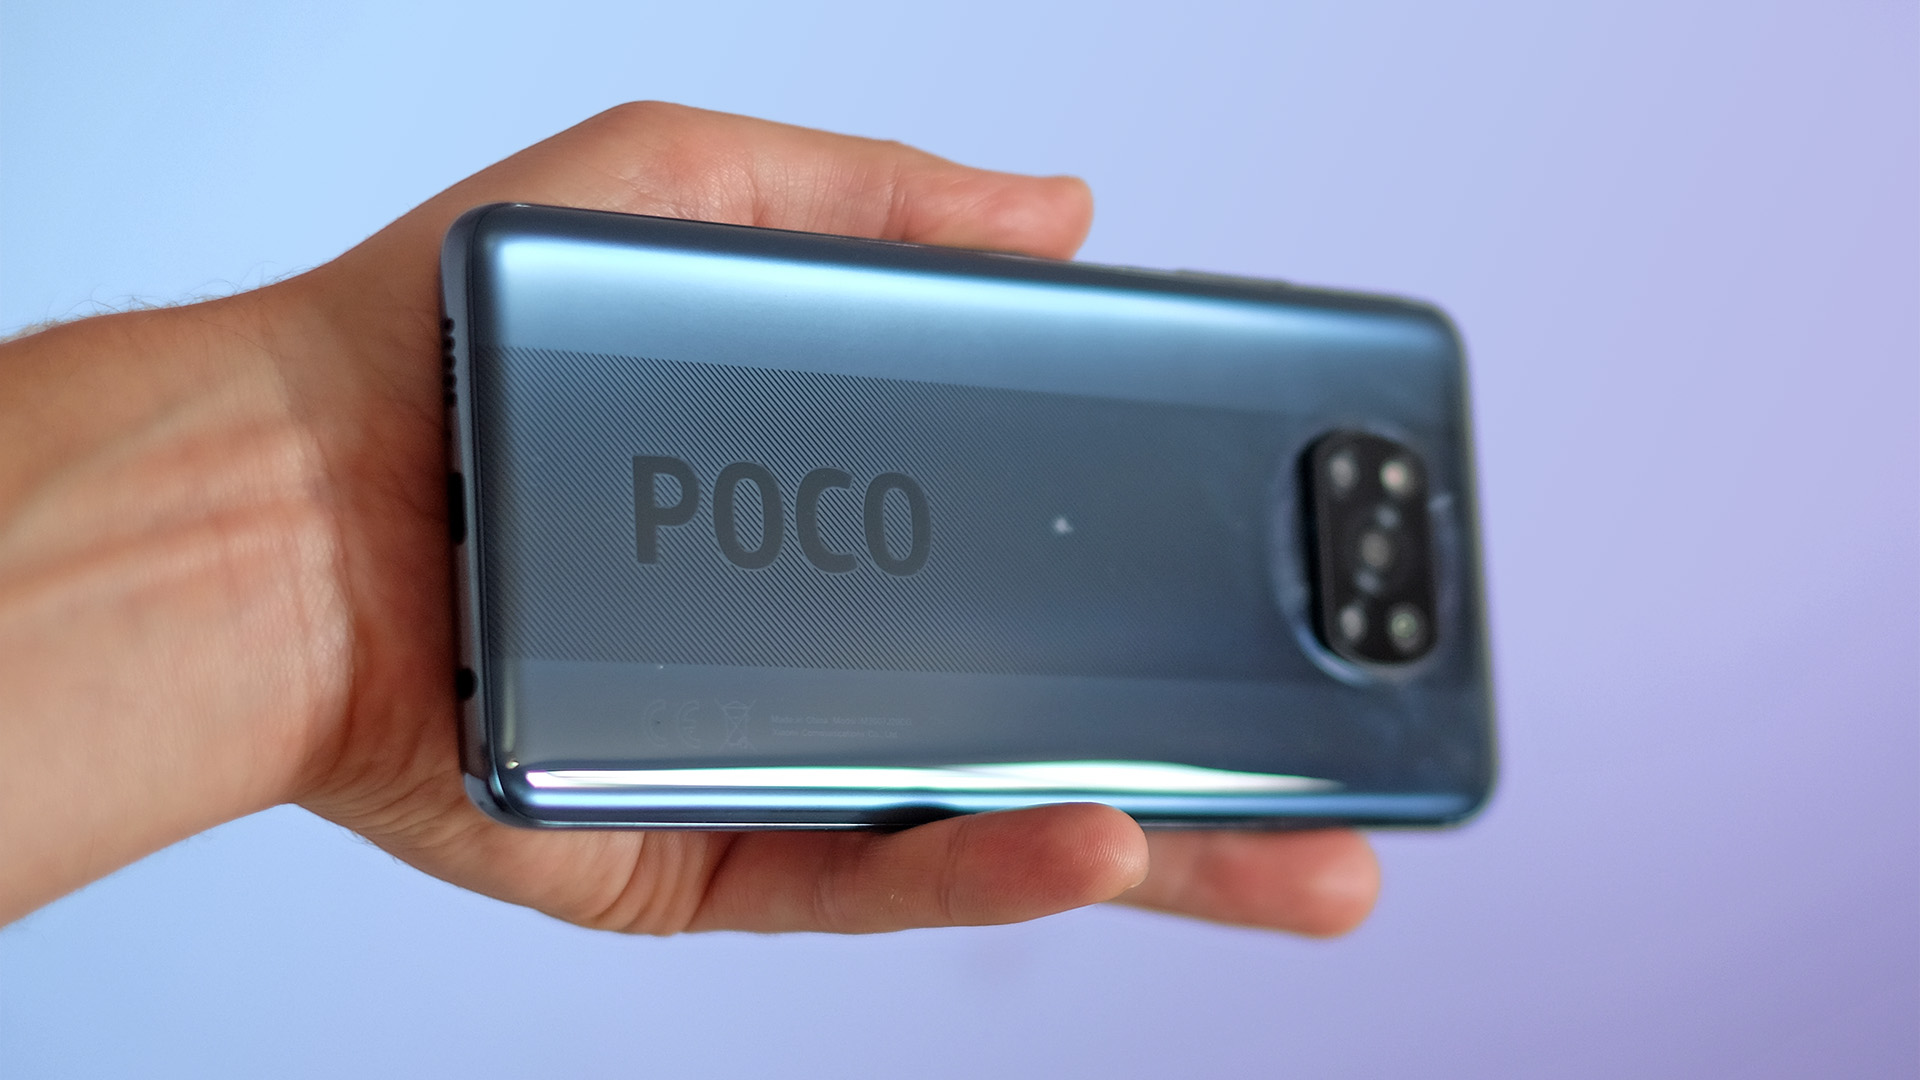 Poco X3 Mobile for the Redmi Series